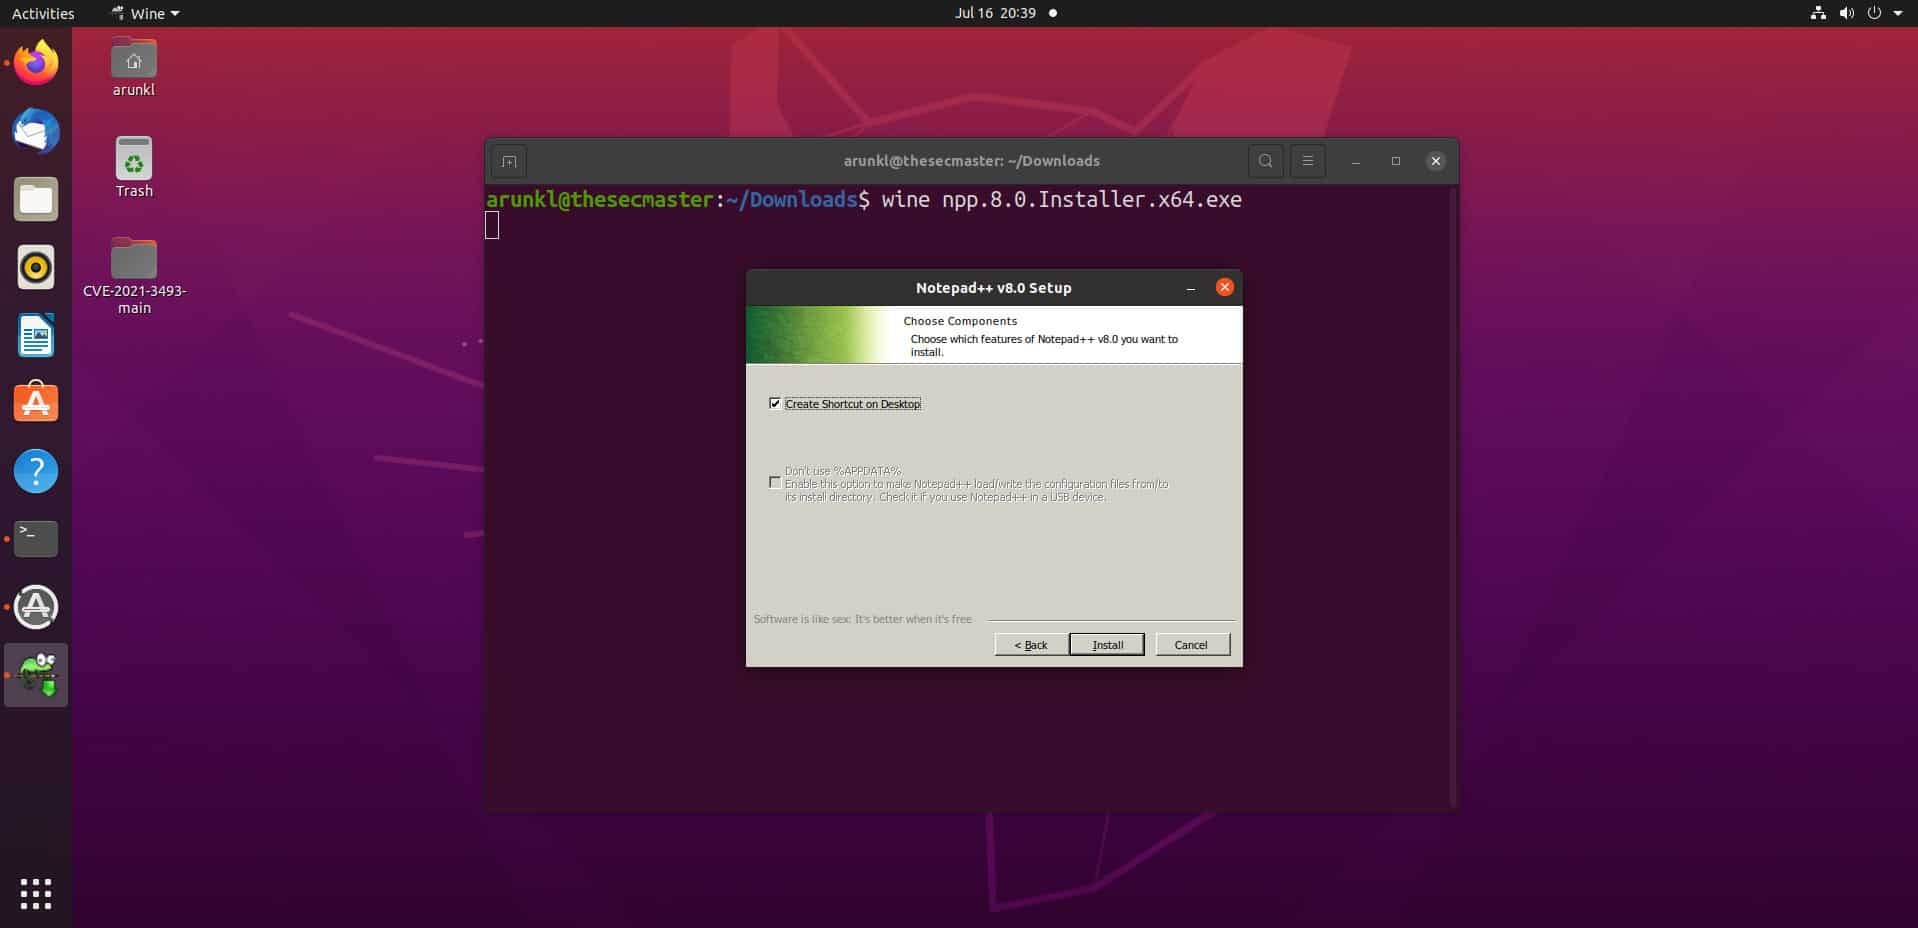 Install Windows App On Ubuntu Linux